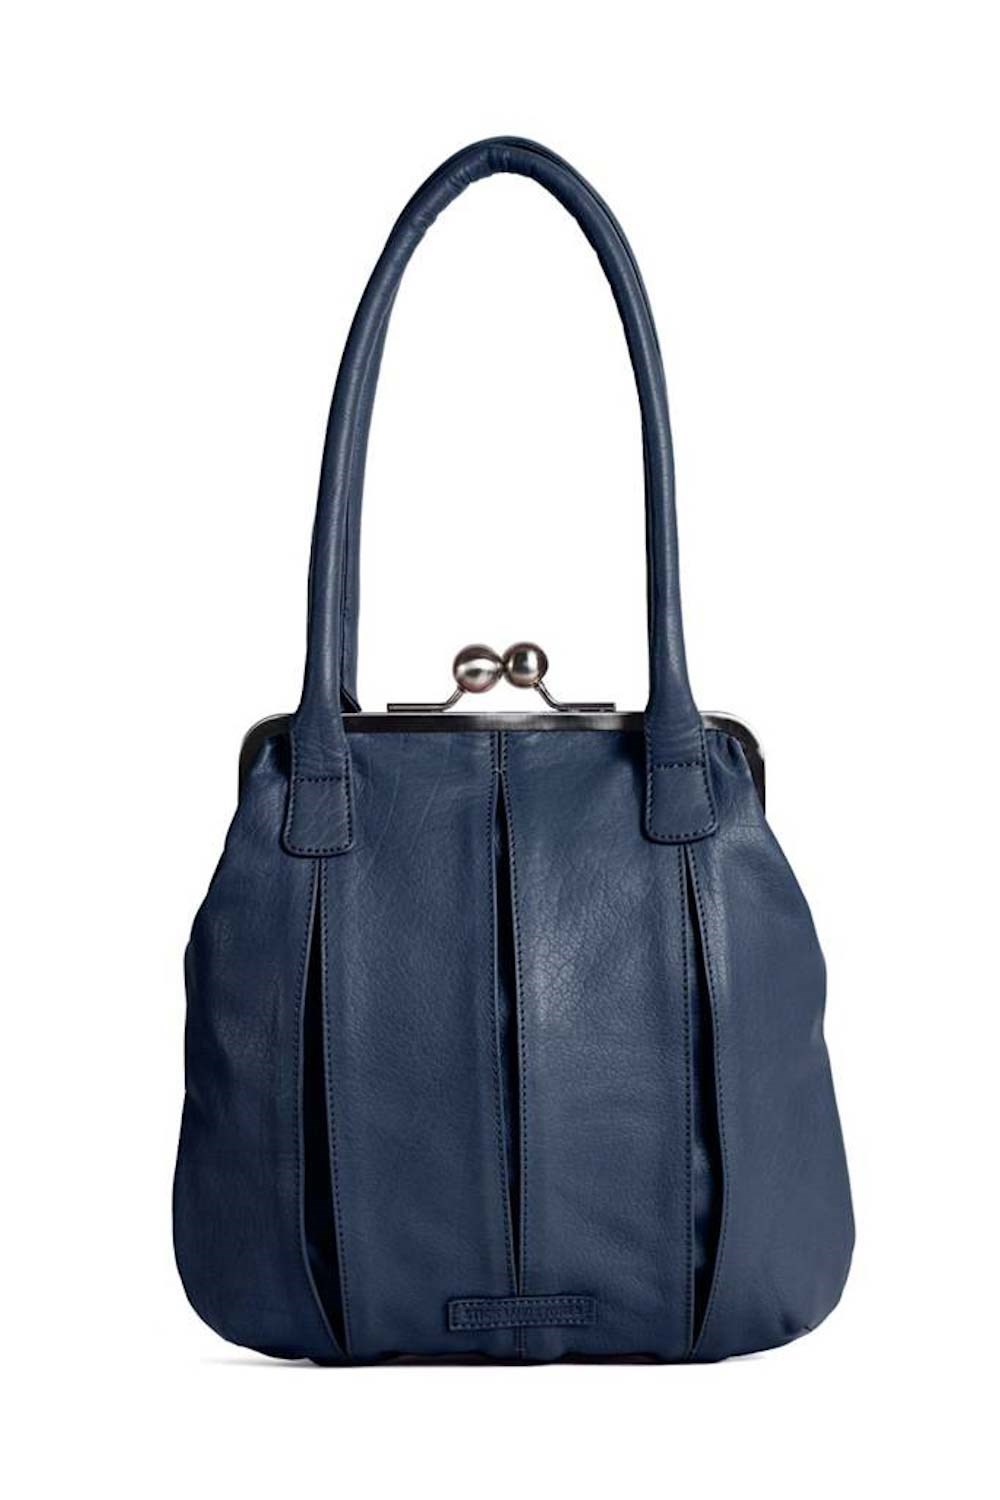 Annecy bag - Buff washed Dark blue